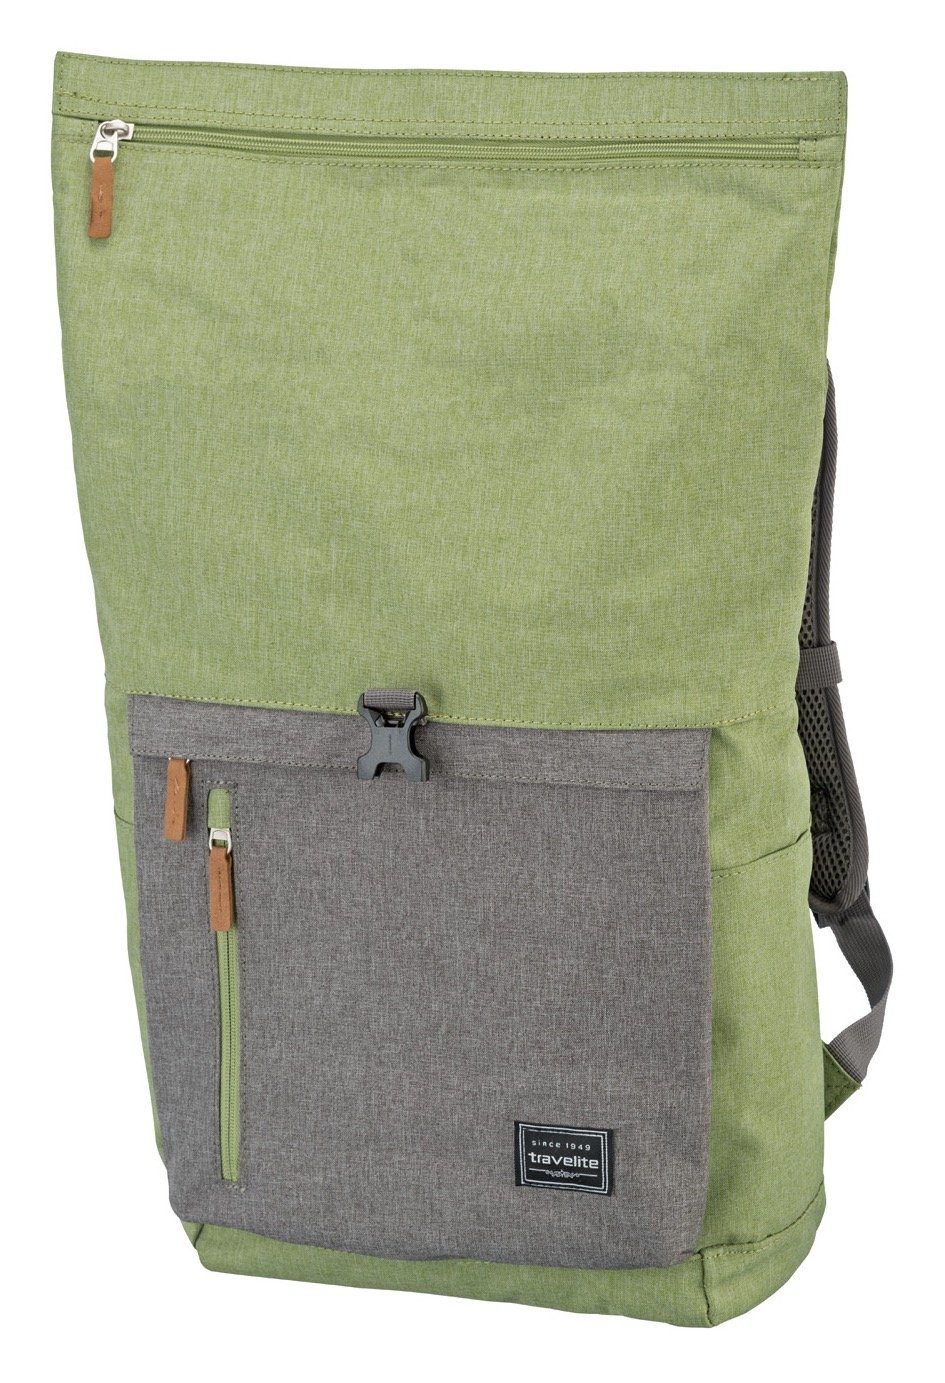 mit Rucksack, Daypack viel BASICS grün/grau Stauraum Rollup travelite